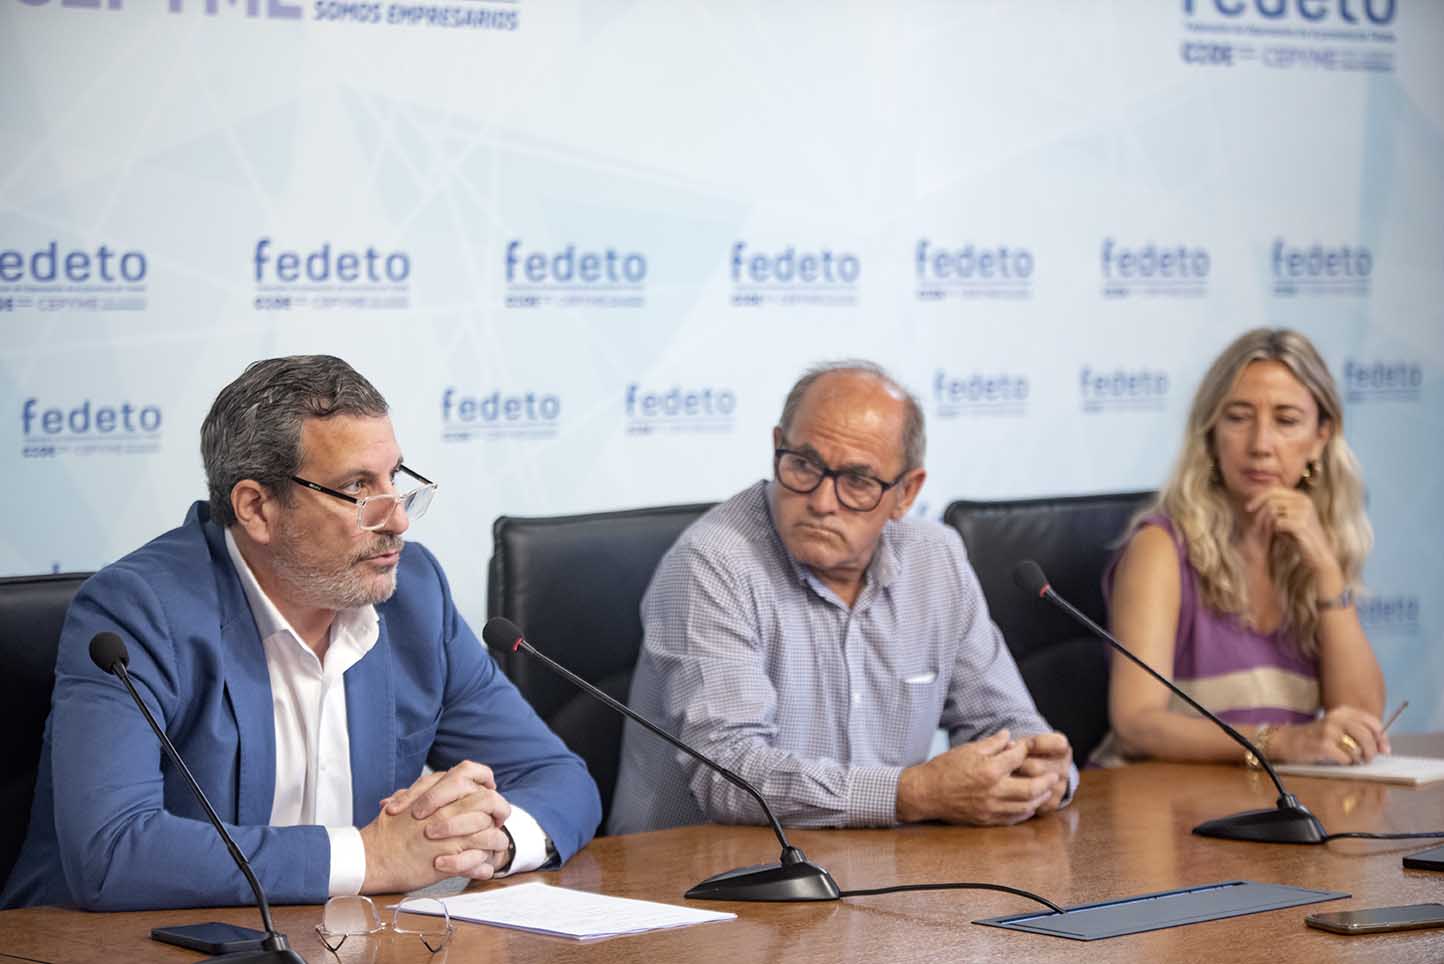 Rueda de prensa de Fedeto junto a la Asociación de Empresarios del Polígono de Toledo. Foto: Rebeca Arango.